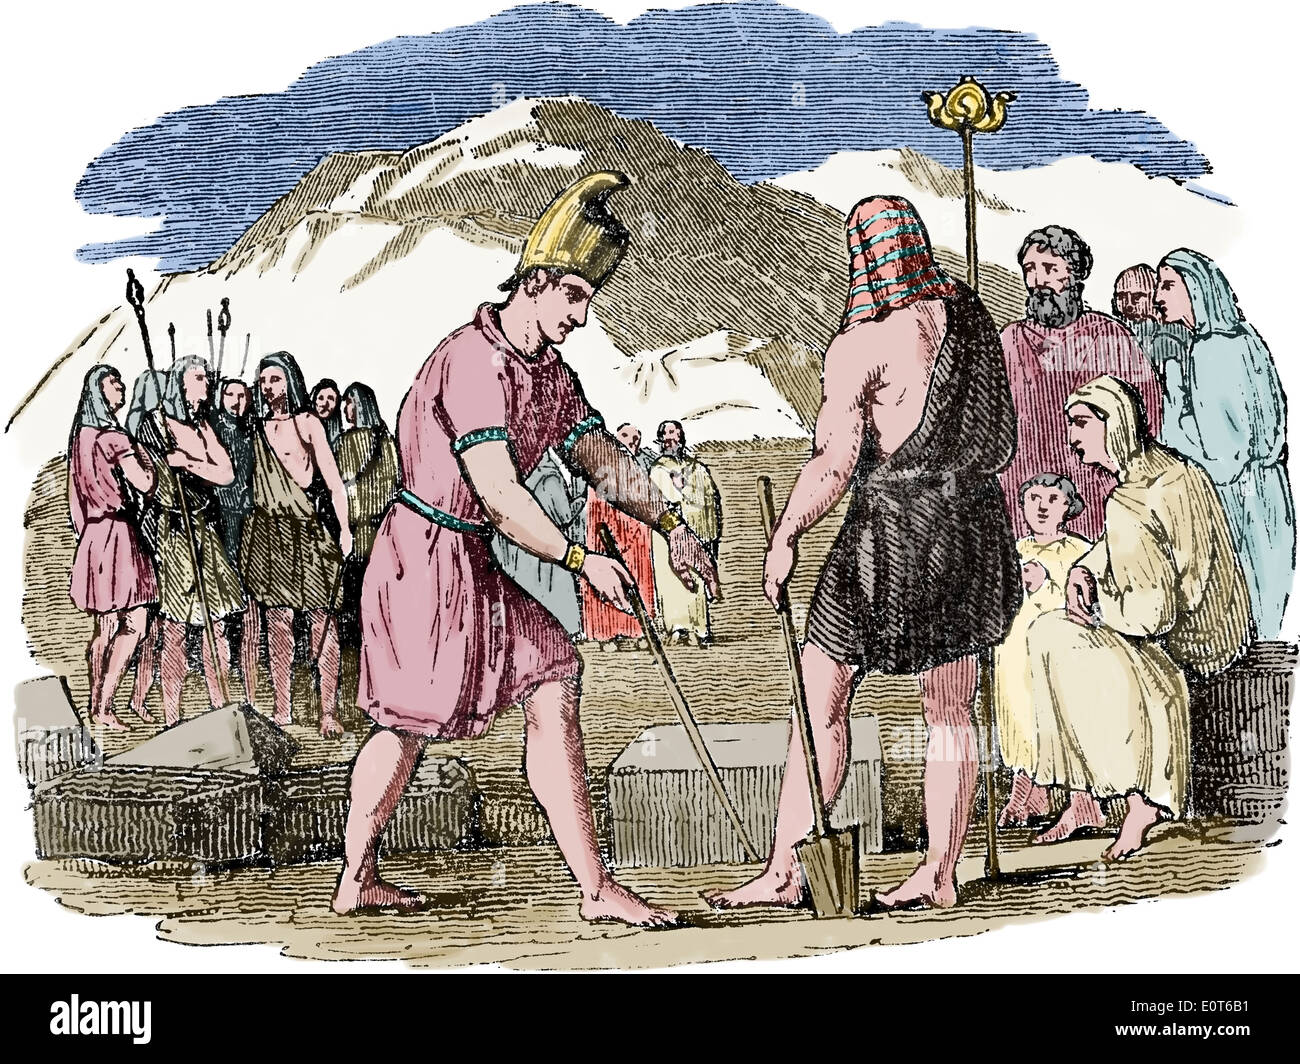 Fondation d'Argos, Grèce. Inachus et ses amis ont fondé la ville d'Argos, Pelopennesus. Banque D'Images